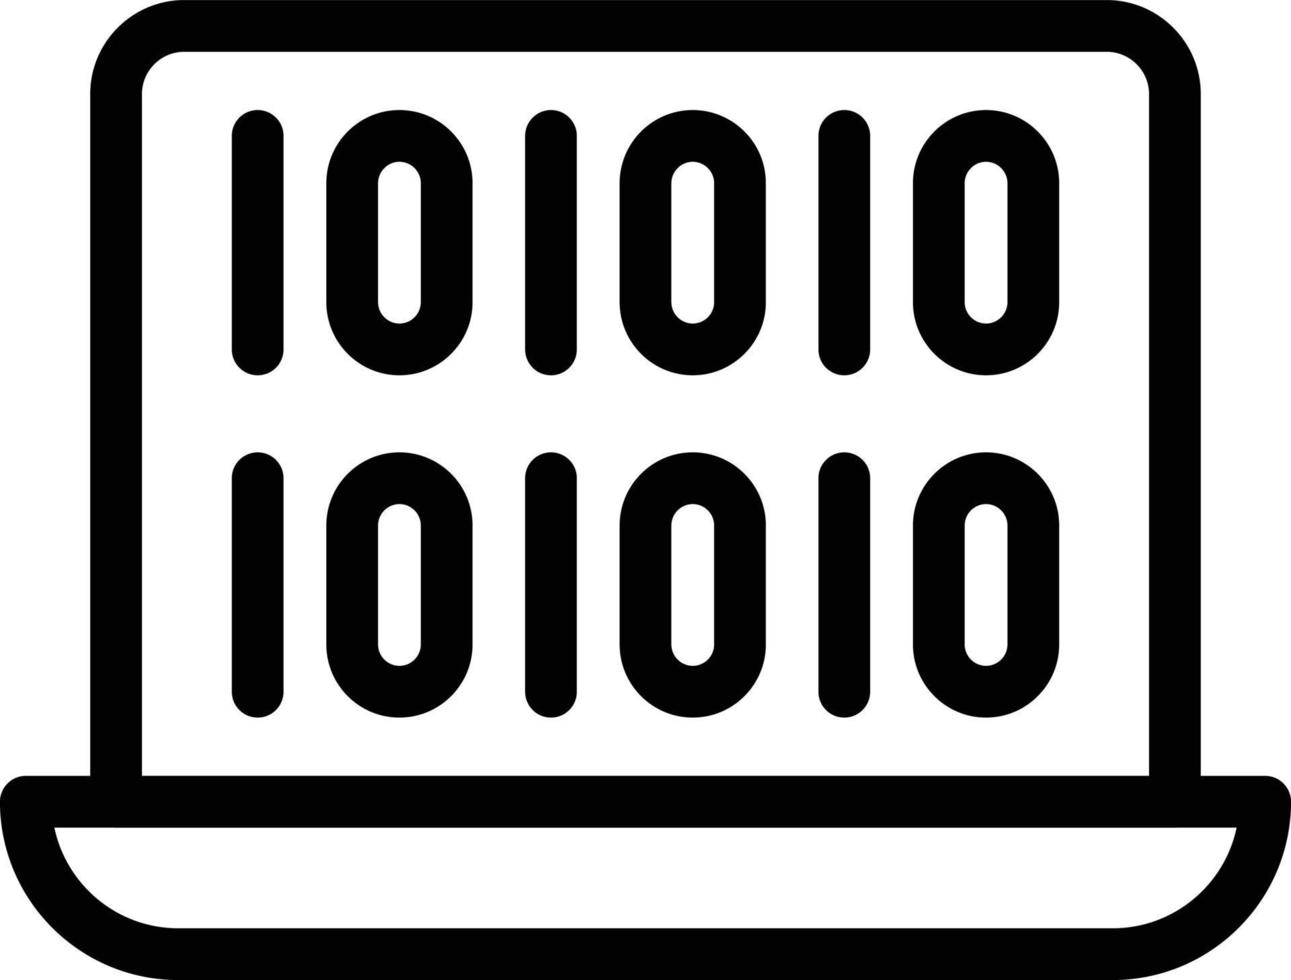 Ilustración de vector de computadora portátil binaria en un fondo. Símbolos de calidad premium. Iconos vectoriales para concepto y diseño gráfico.